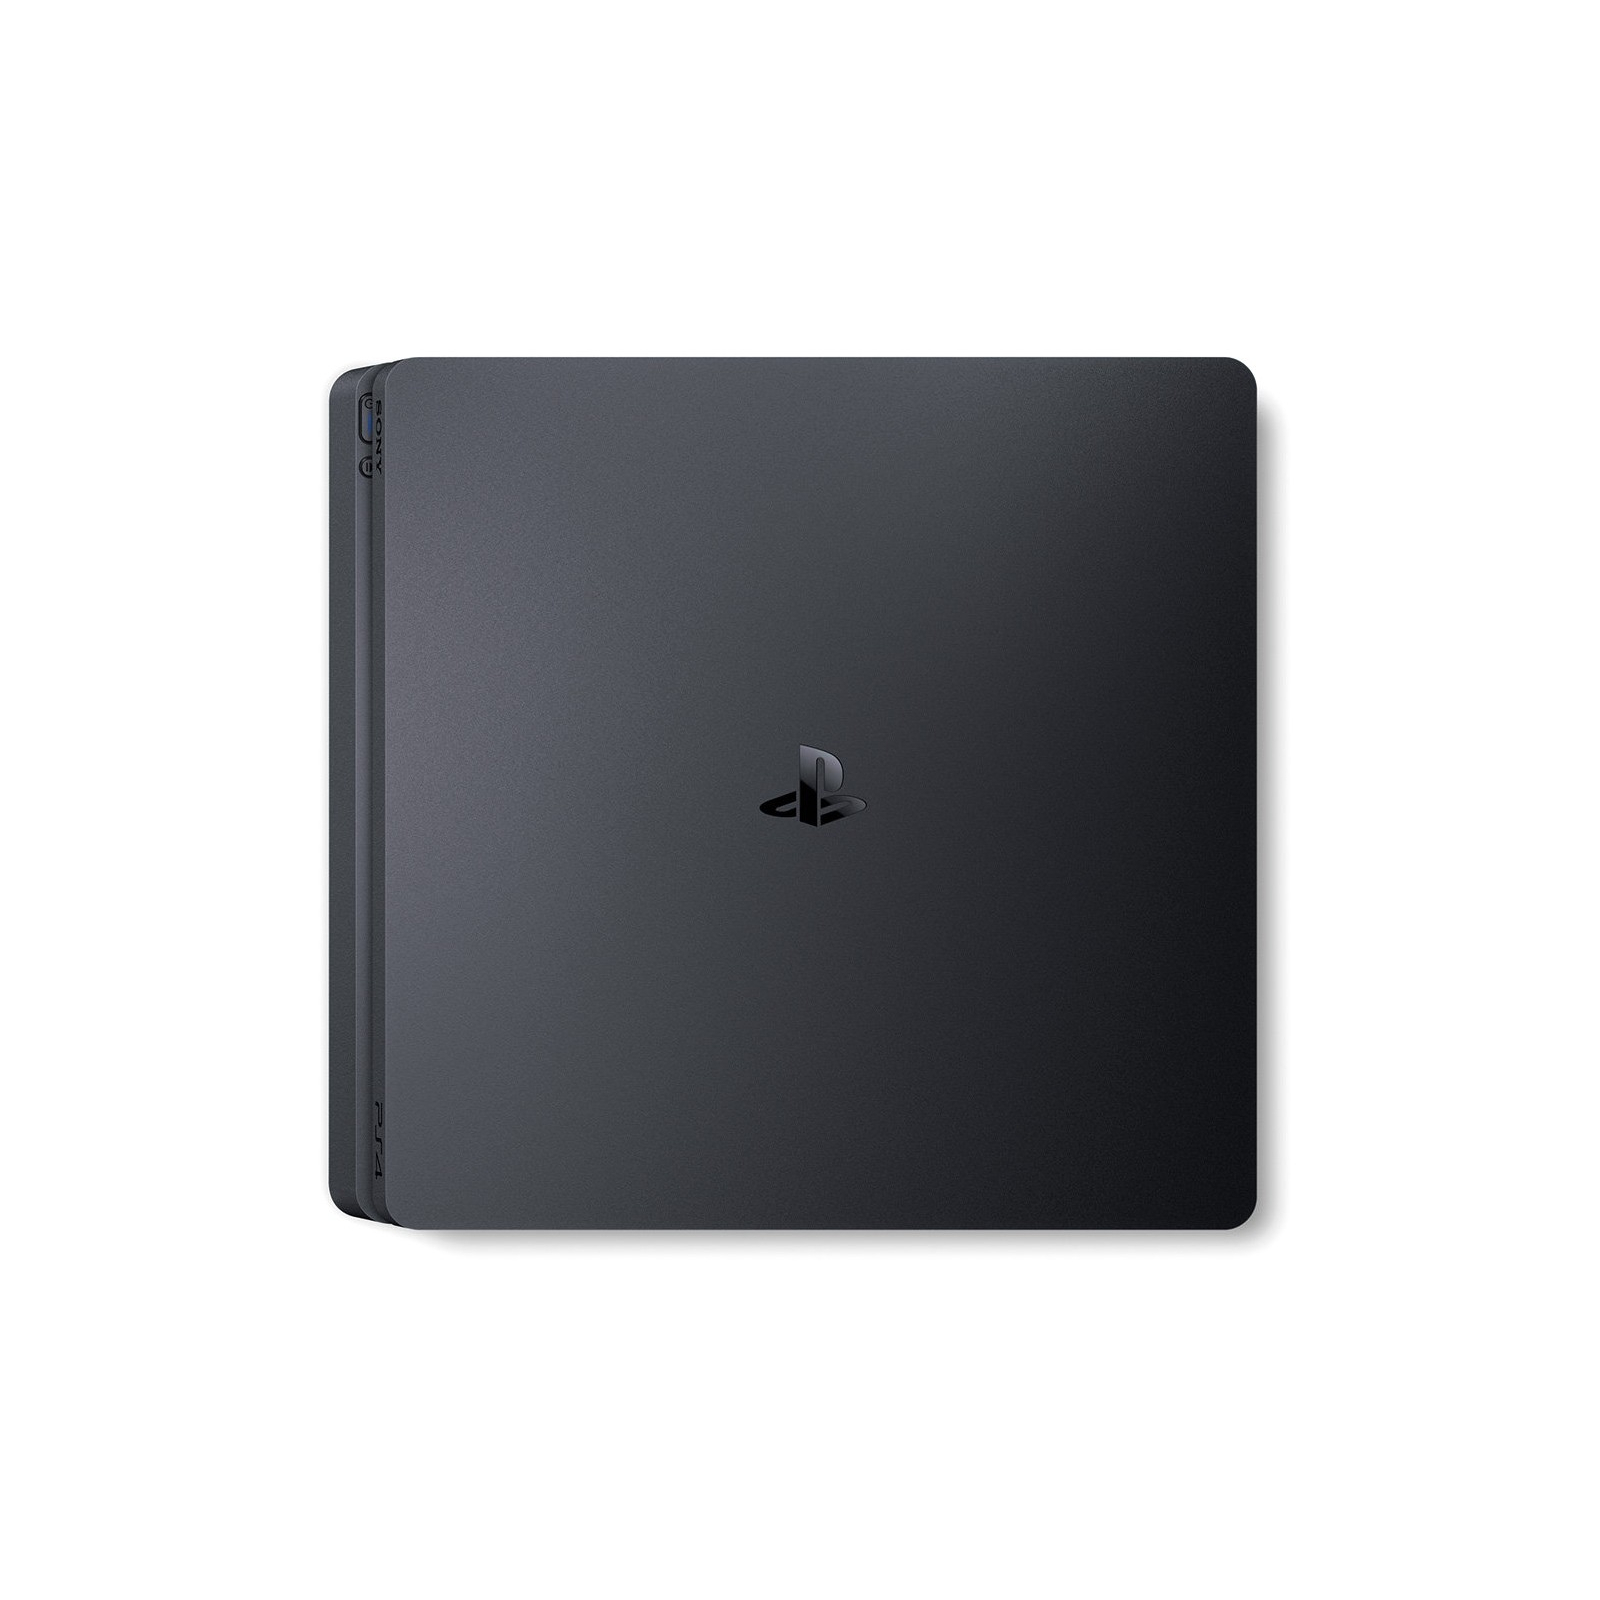 Игровая консоль Sony PlayStation 4 Slim 500Gb Black (CUH-2008) изображение 3